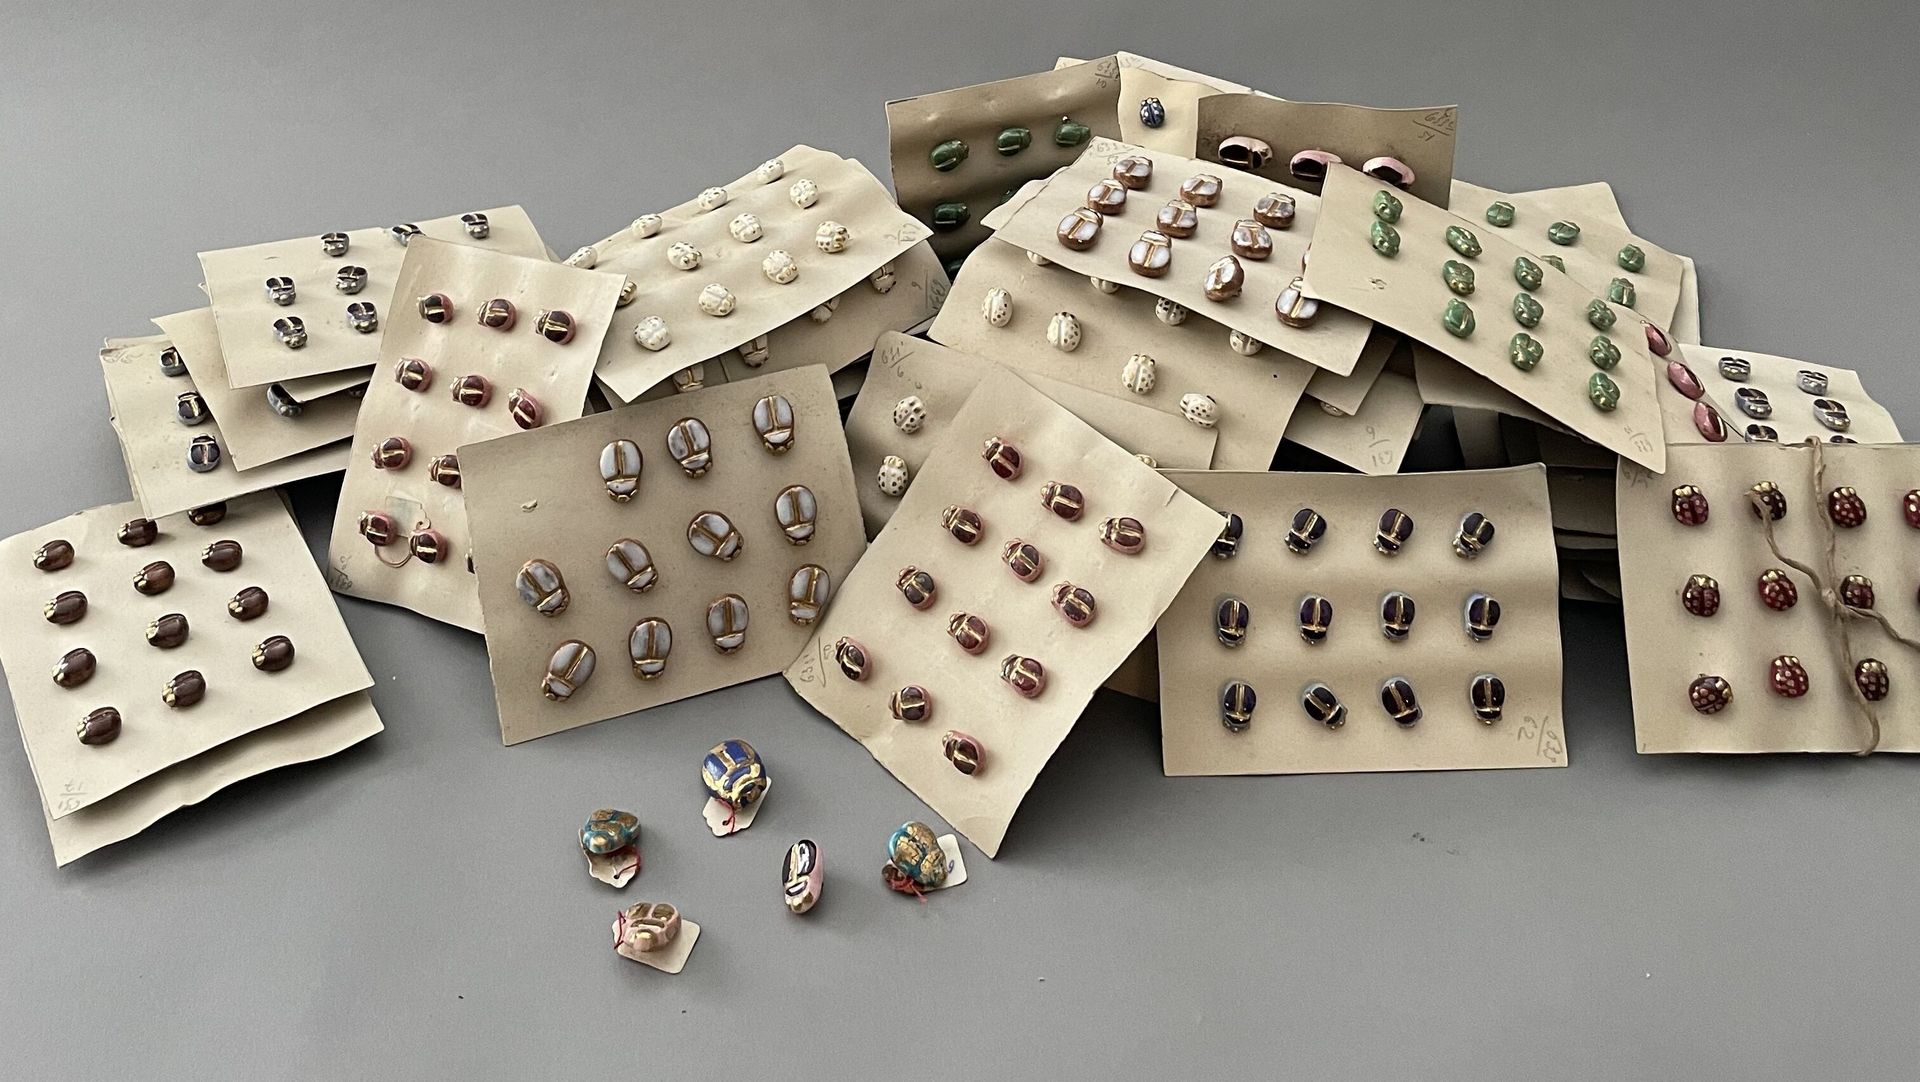 Null 两套花式陶瓷纽扣，约1940年，上釉和镀金的陶瓷纽扣，金属扣件。约有82个大纽扣和277个小纽扣以甲虫为主题，约有56个小纽扣以瓢虫为主题。 
主要附&hellip;